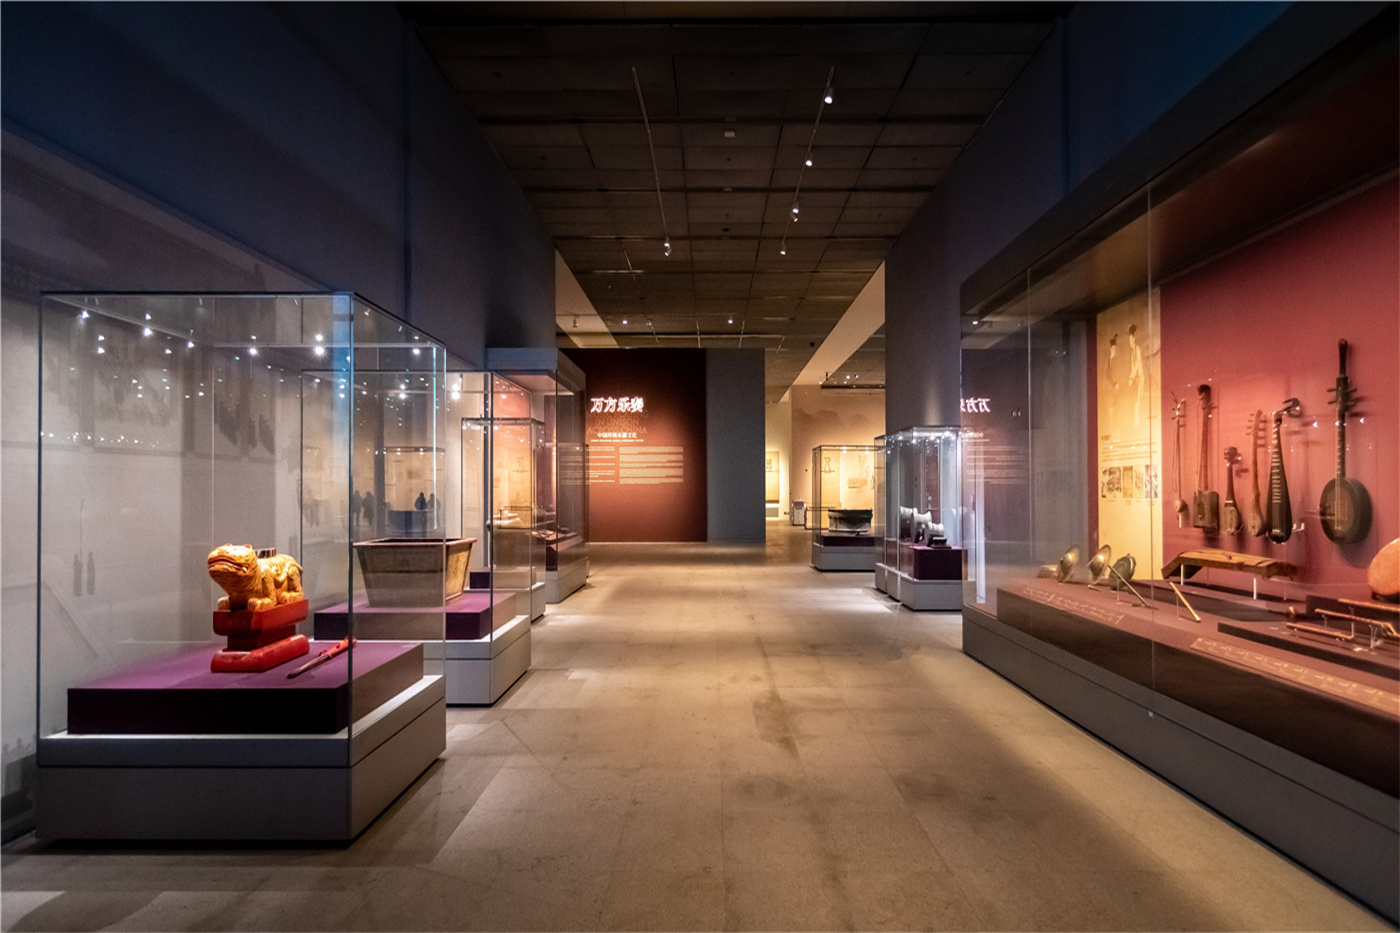 中華瑰寶——中國非物質文化遺産和工藝美術展